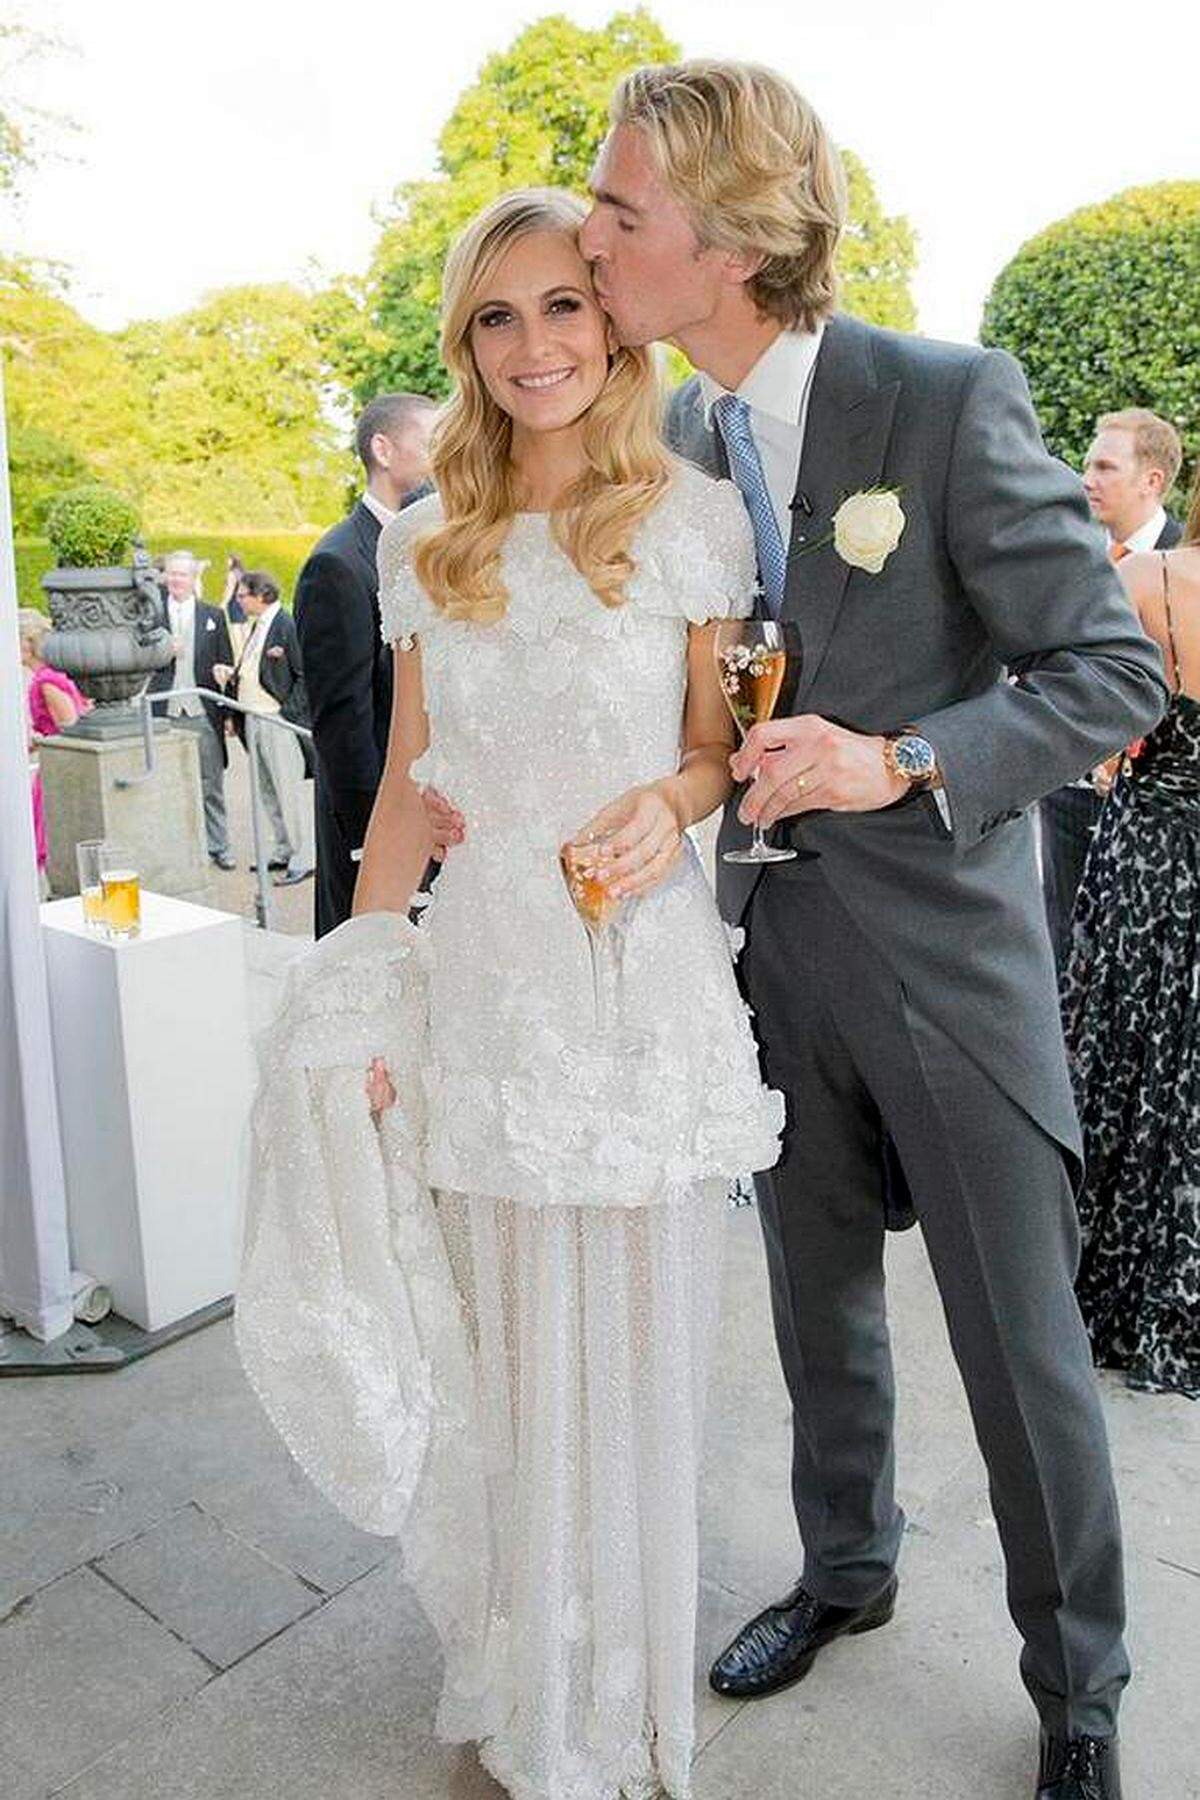 Oft reicht auch schon ein Tweet. "The perfect champagne for the perfect day @PerrierJouet #BeautifulBubbles" - diesen Werbespruch postete das Model Poppy Delevingne unter ihr Hochzeitsfoto und wurde Medienberichten nach gut bezahlt.